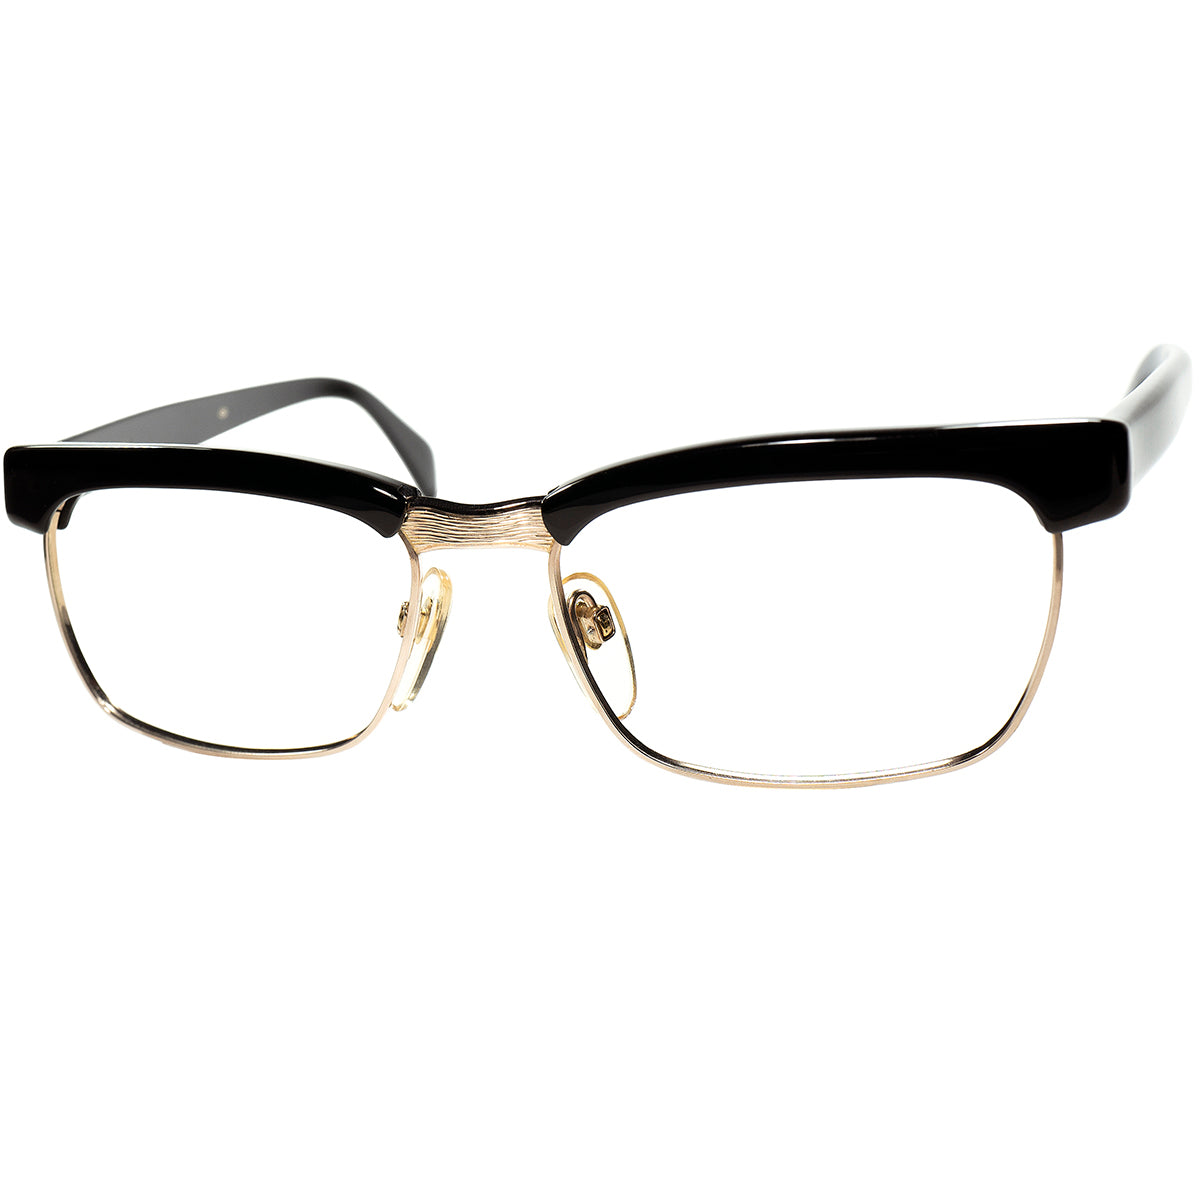 当時ベストセラー名作 1960-70s デッドストック 西ドイツ製 オリジナル RODENSTOCK ローデンストック ARNOLD アーノルド  1/20 12K金張 size52/16 BLACK ビンテージ ヴィンテージ 眼鏡 メガネ 【a9470】